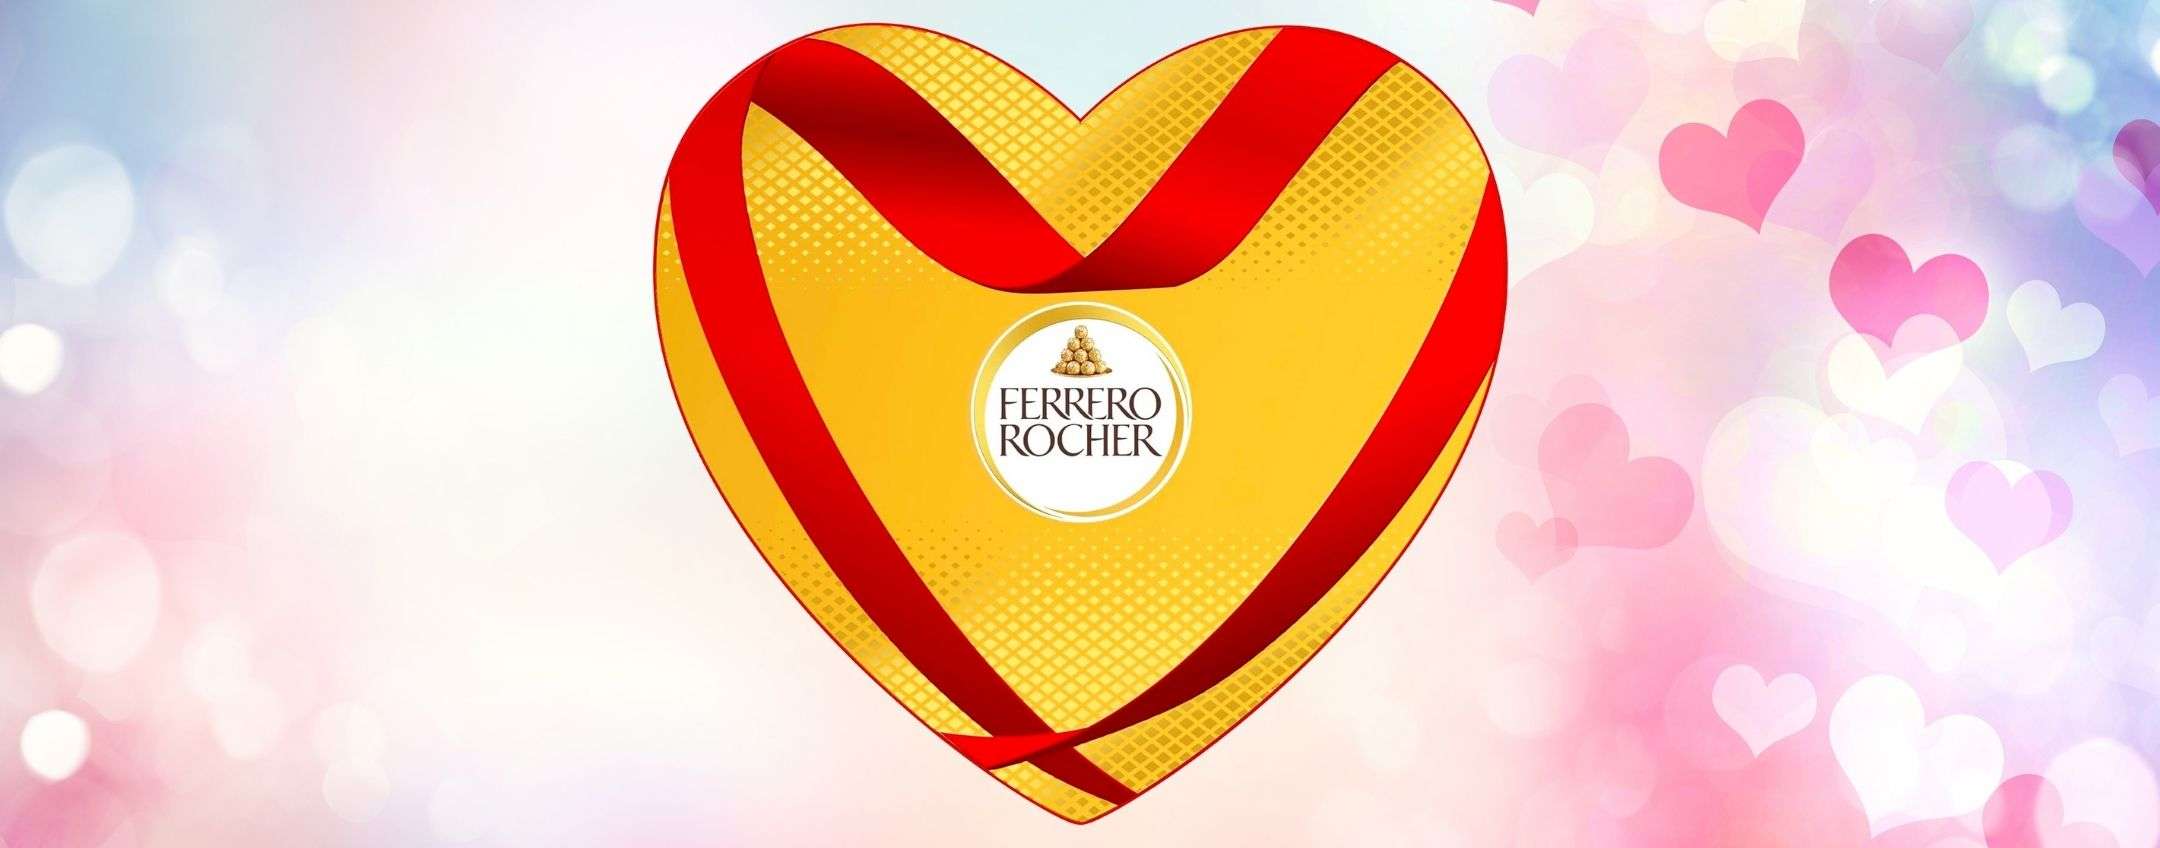 Scatola cioccolatini Ferrero Rocher per San Valentino in OFFERTA